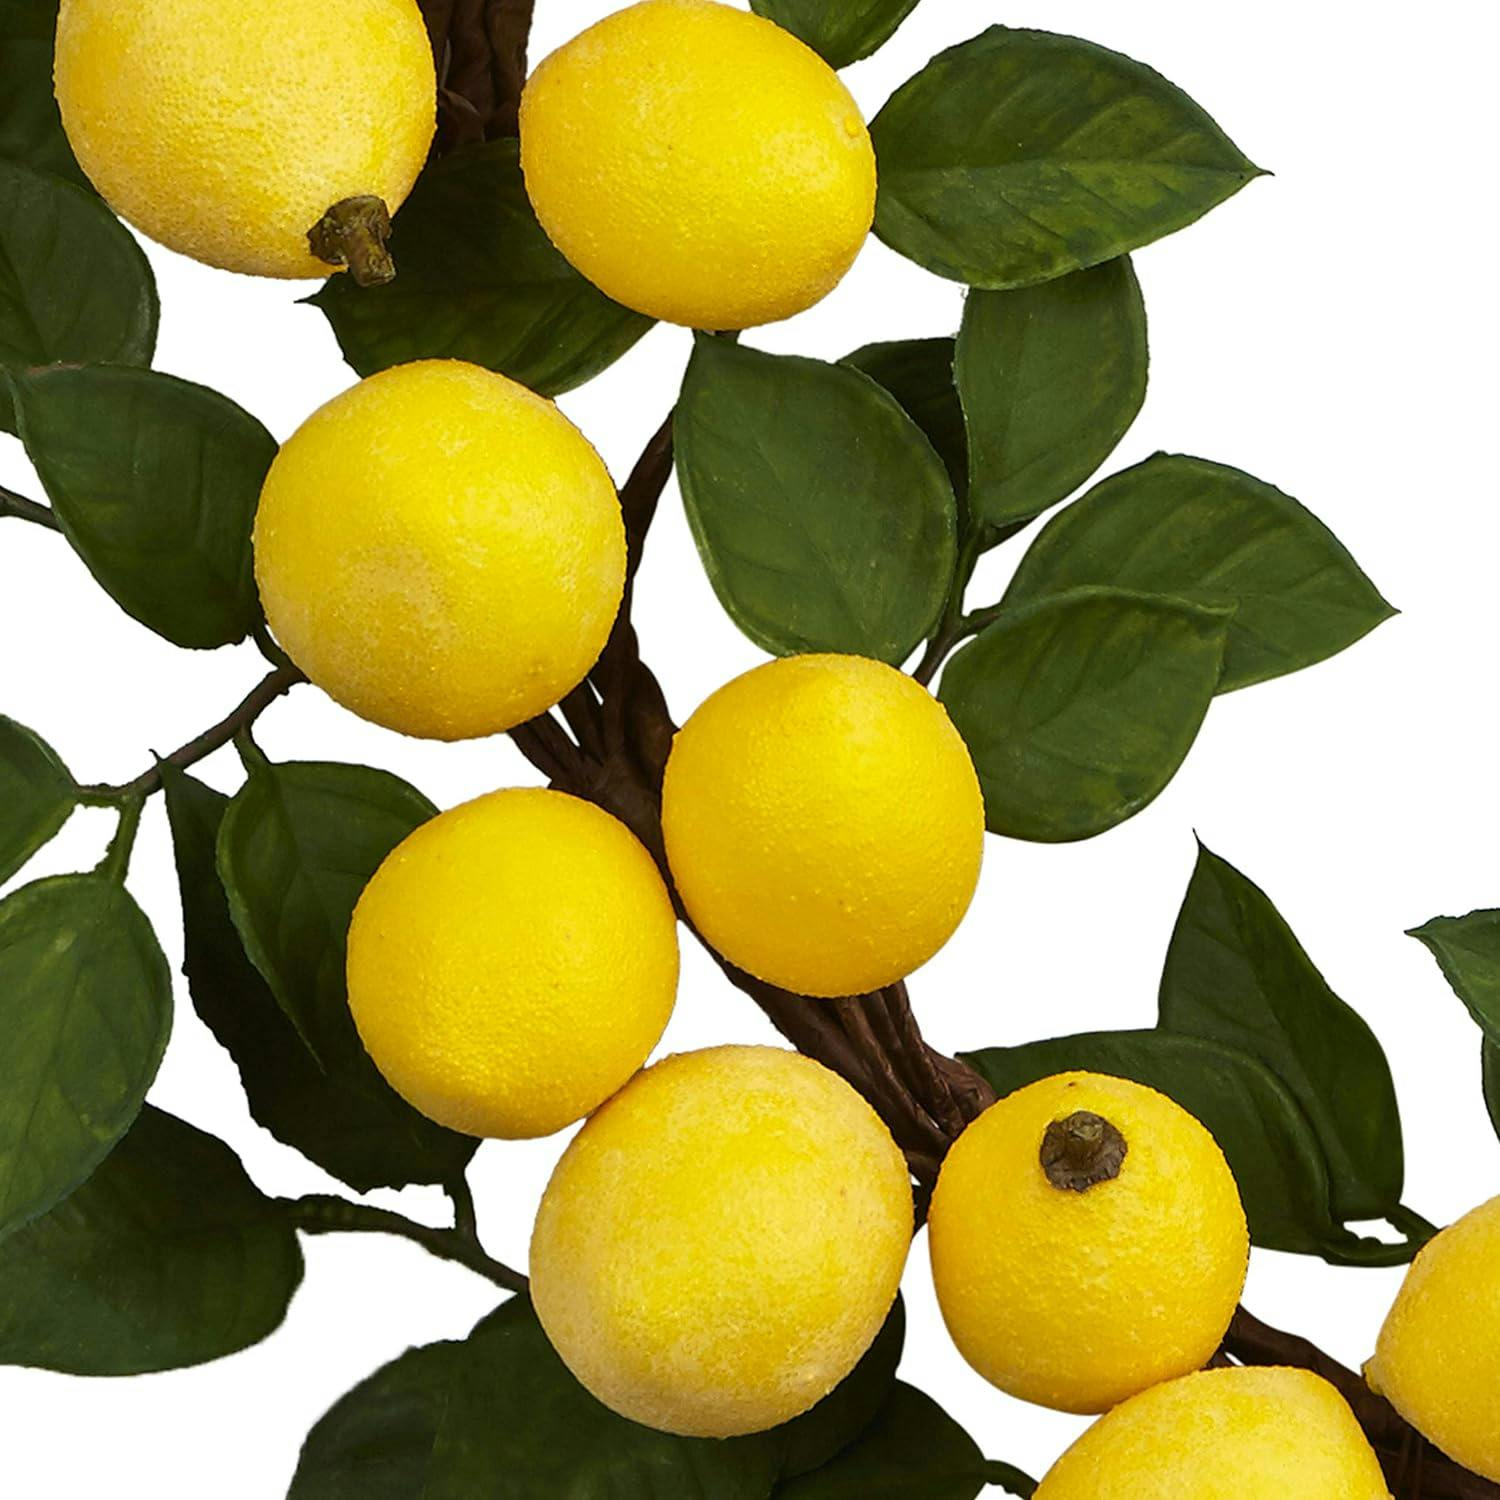 Sunlit Citrus 18" Burlap Trimmed Lemon Wreath for Outdoor Decor